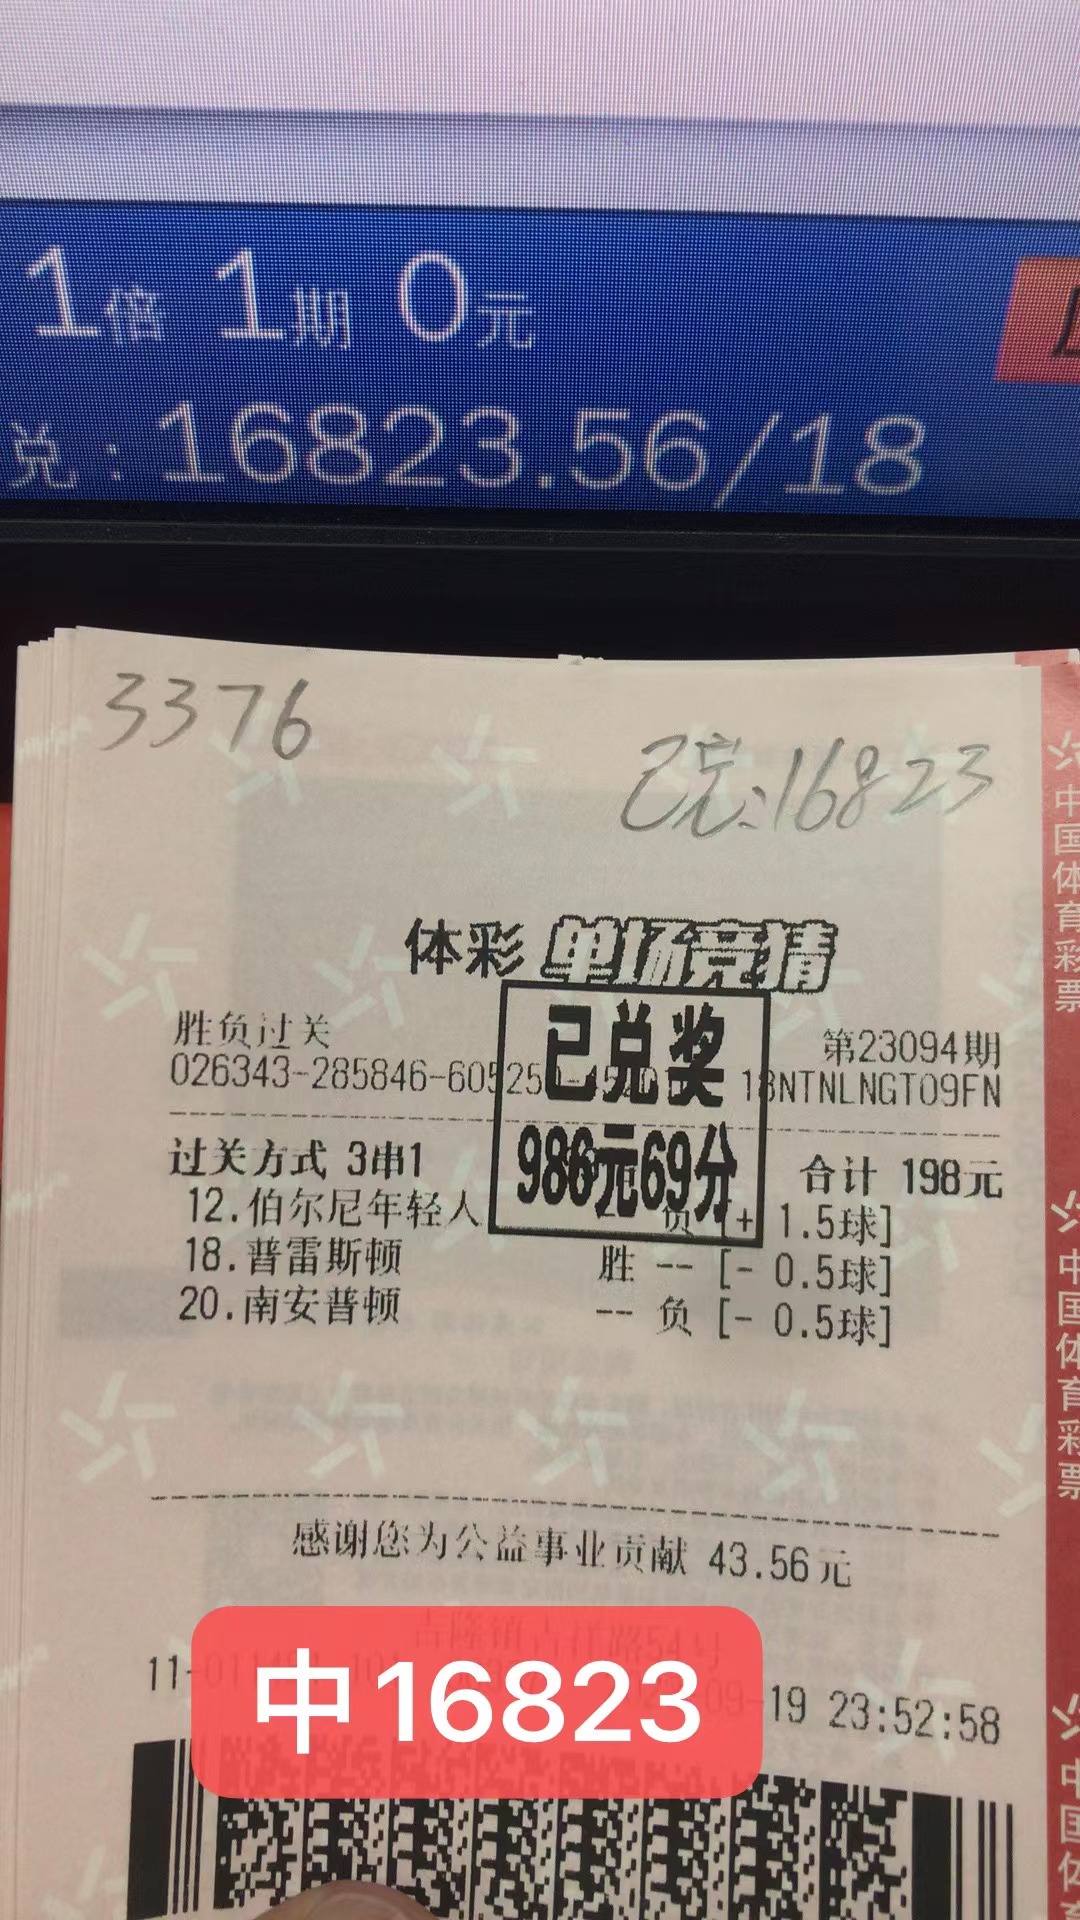 9月20日胜负过关收米16823元-北单实体店